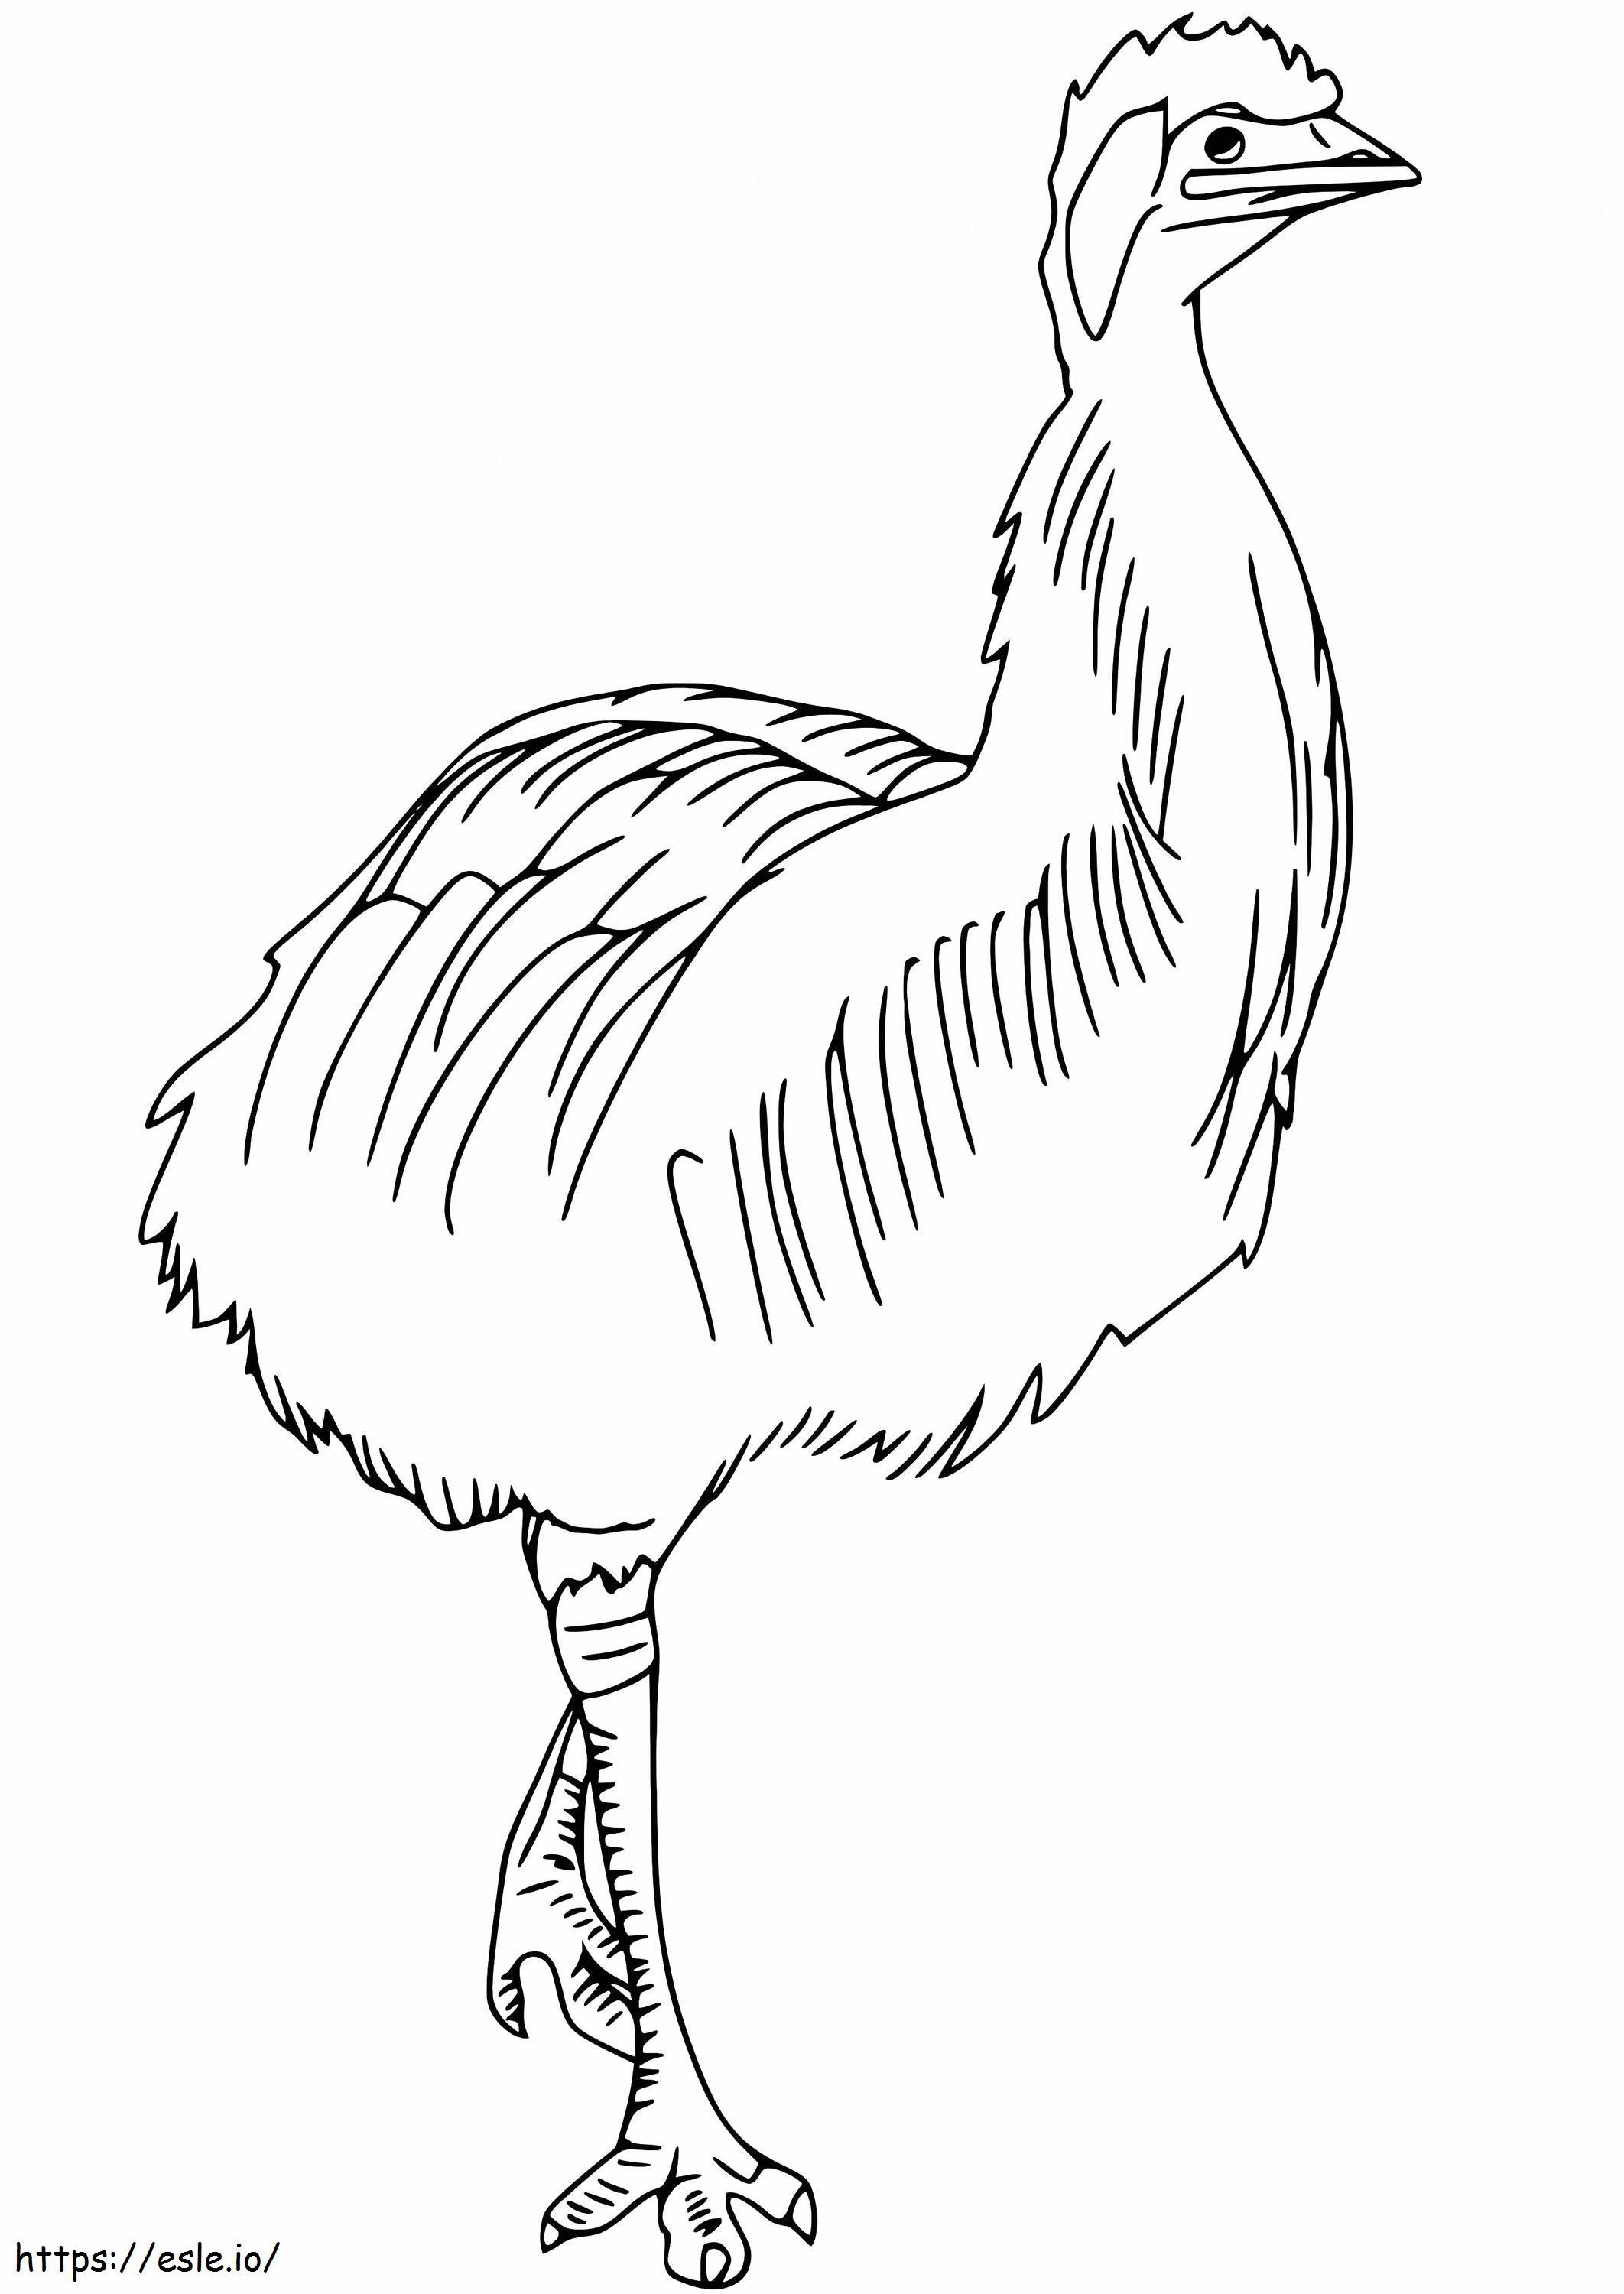 Kazuar karłowaty kolorowanka